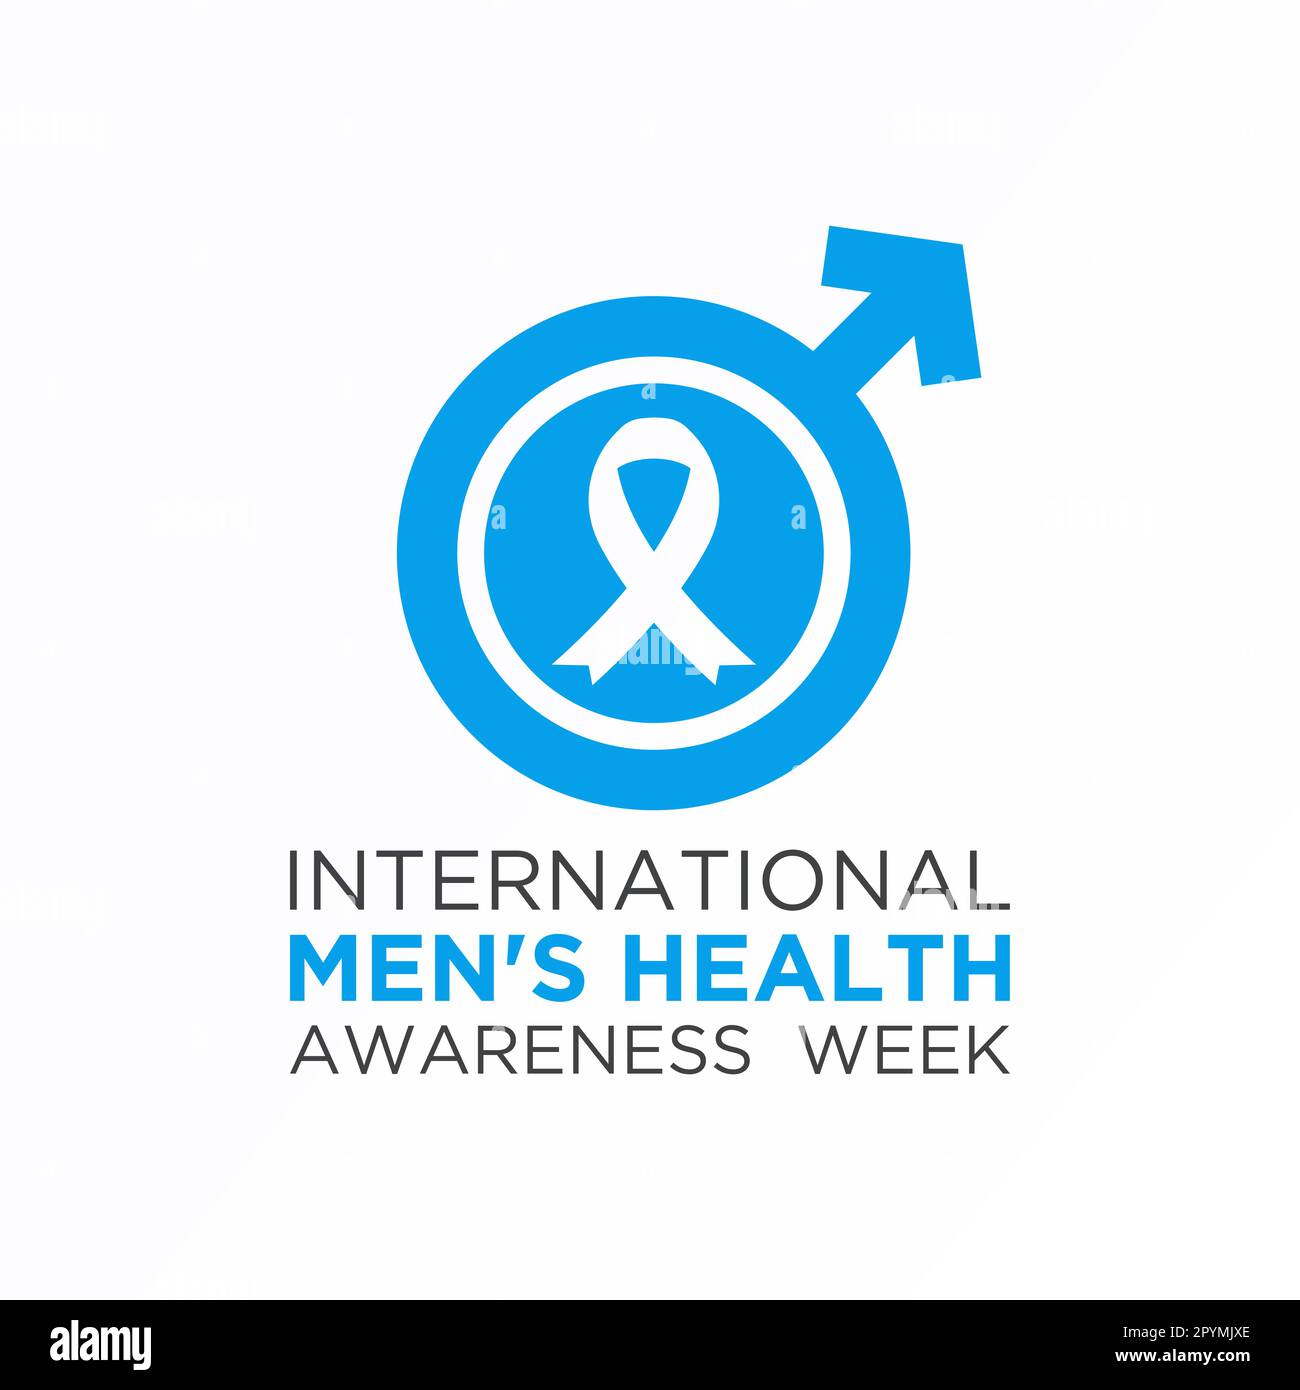 La semaine internationale de sensibilisation à la santé des hommes est célébrée chaque année dans le monde entier à la mi-juin. Modèle de vecteur de la semaine de la santé pour hommes pour banne Illustration de Vecteur